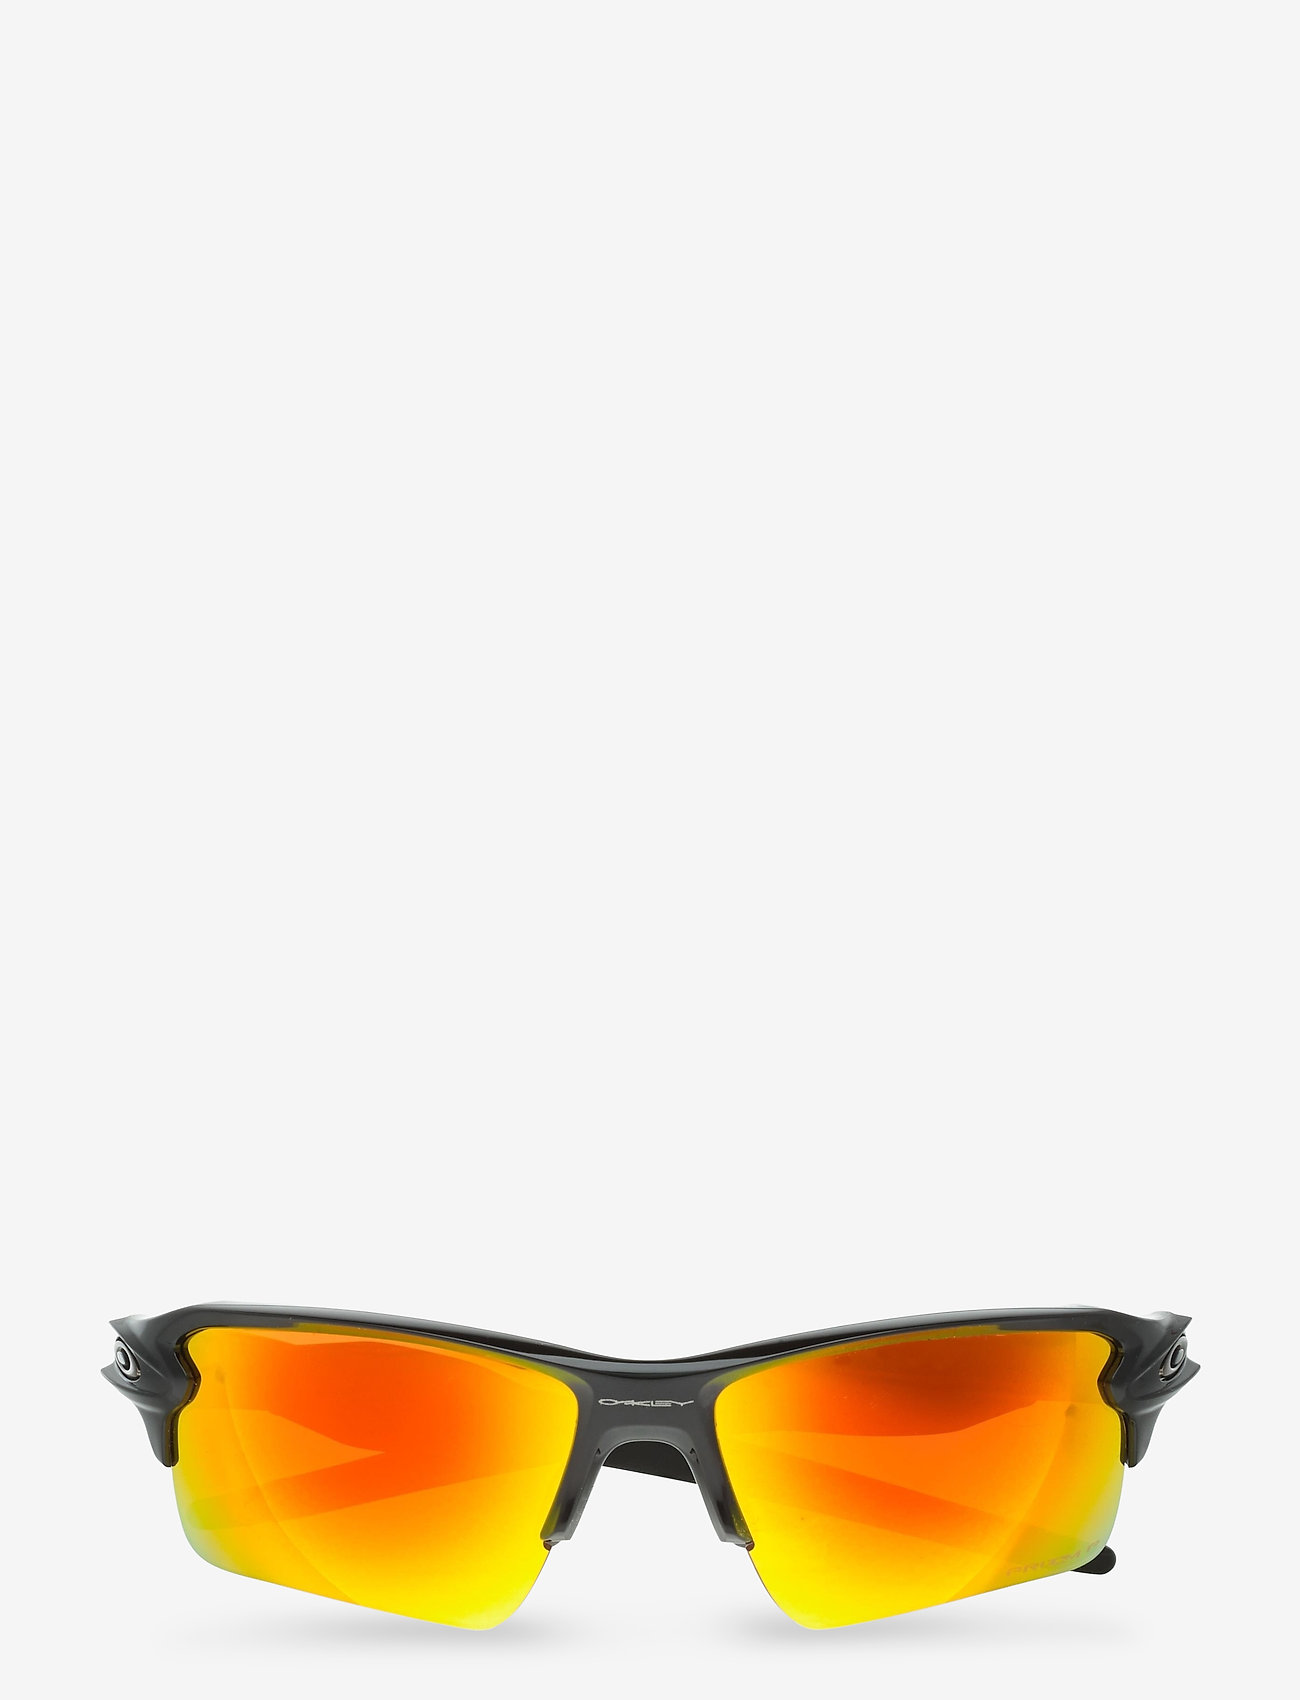 oakley polarized flak 2.0 xl sunglasses